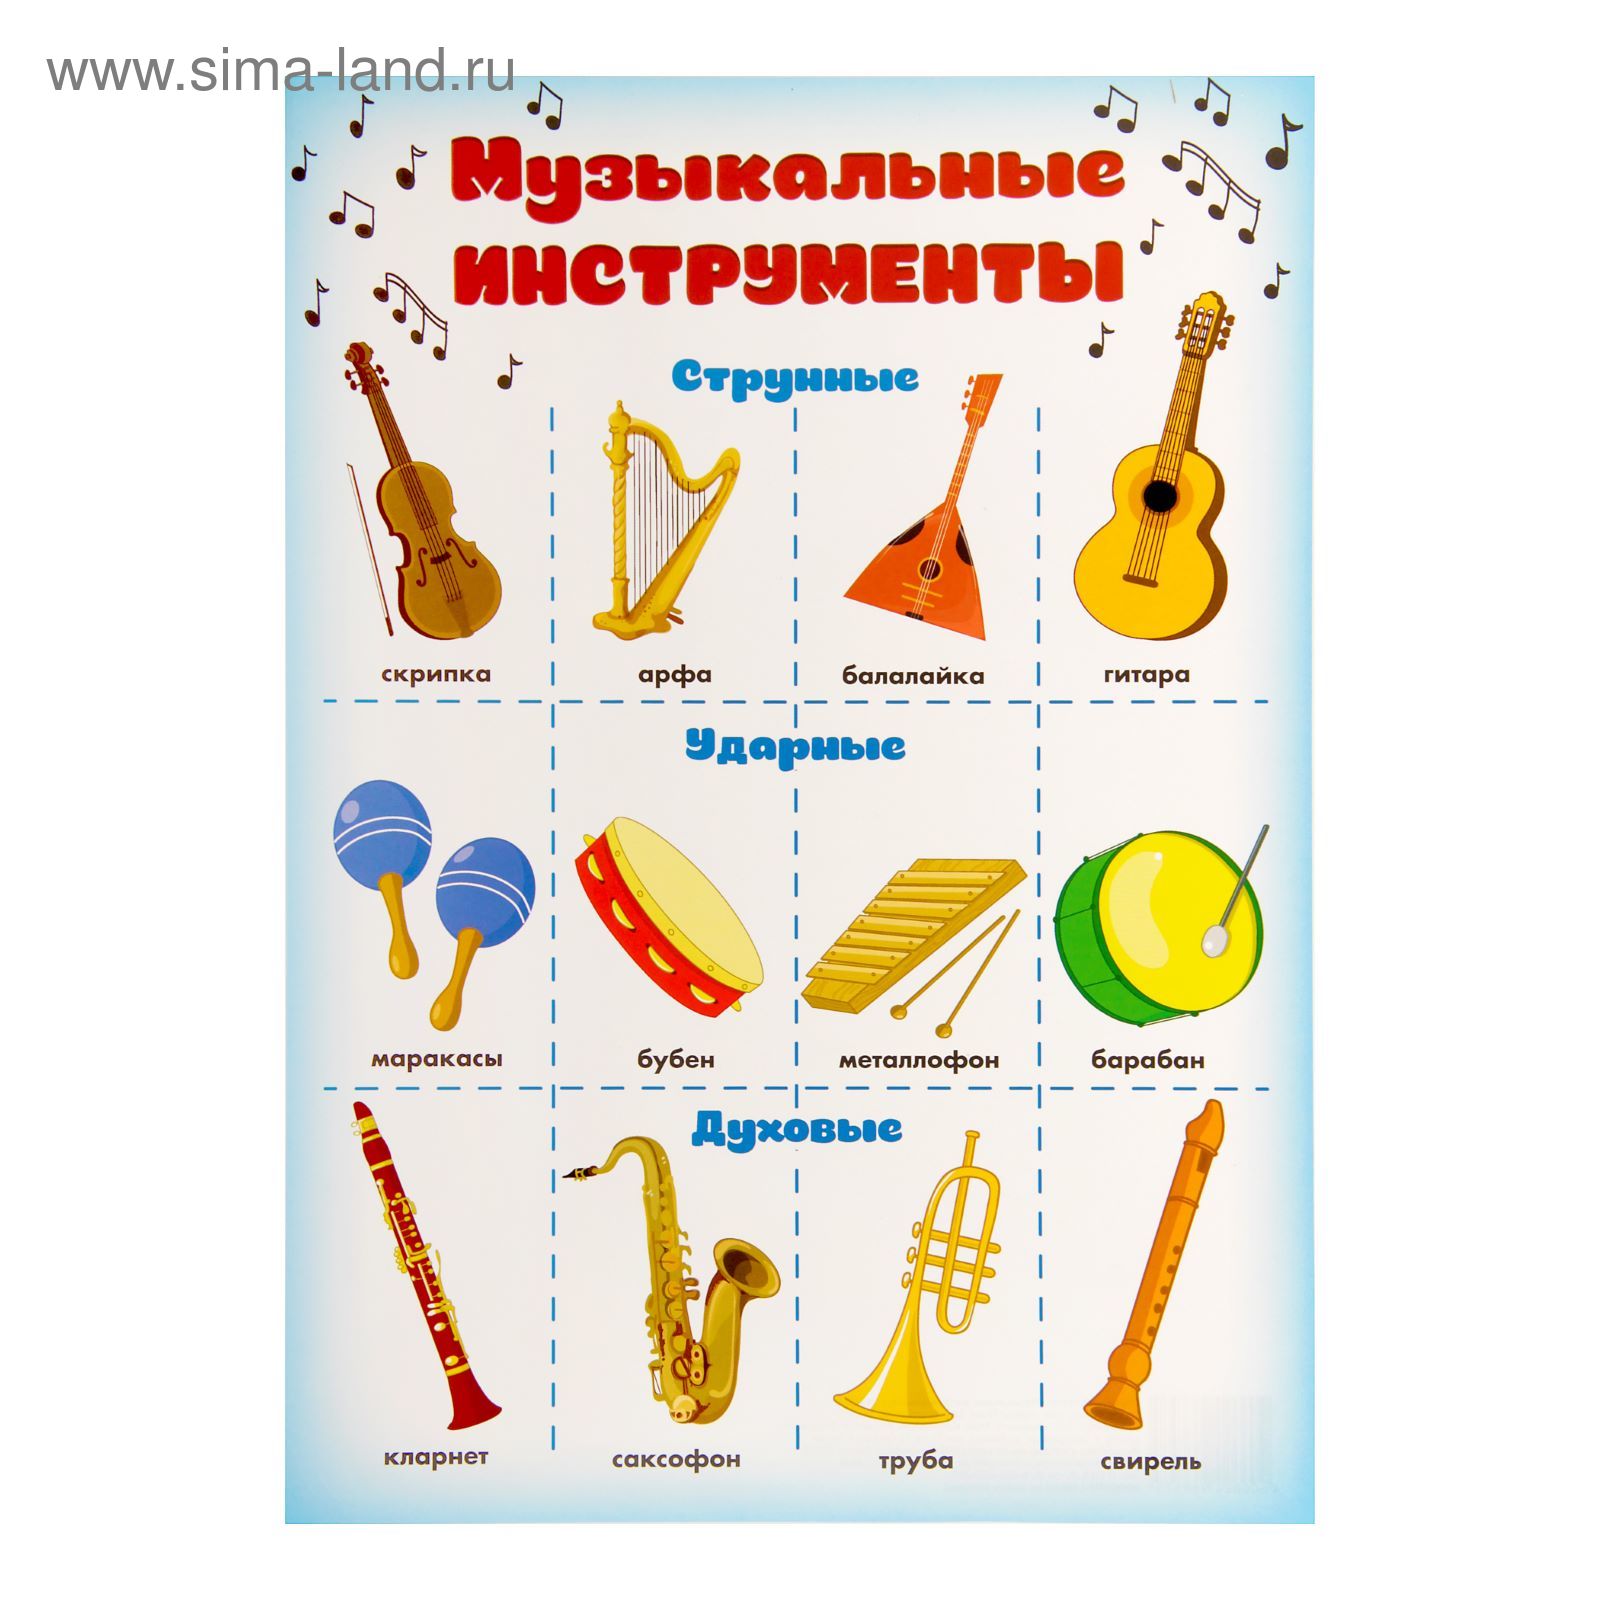 Учим музыкальные инструменты. Музыкальные инструменты. Плакат музыкальные инструменты. Музыкальные инструменты для дошкольников. Детские музыкальные инструменты с названиями.